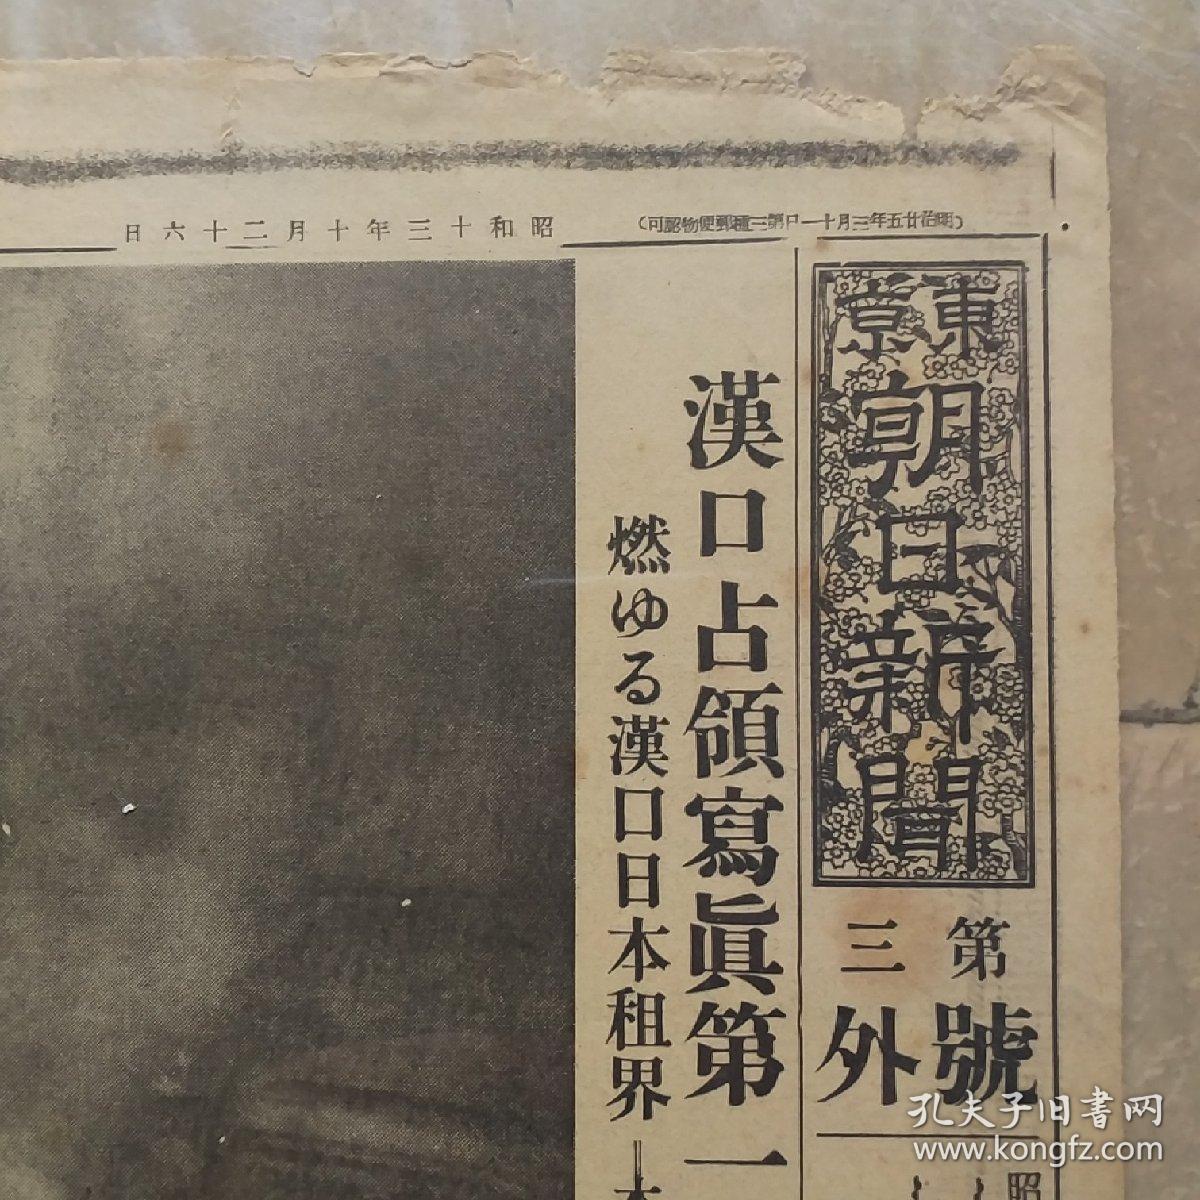 侵华史料铁证：日军汉口德安占领东京朝日新闻第三号外